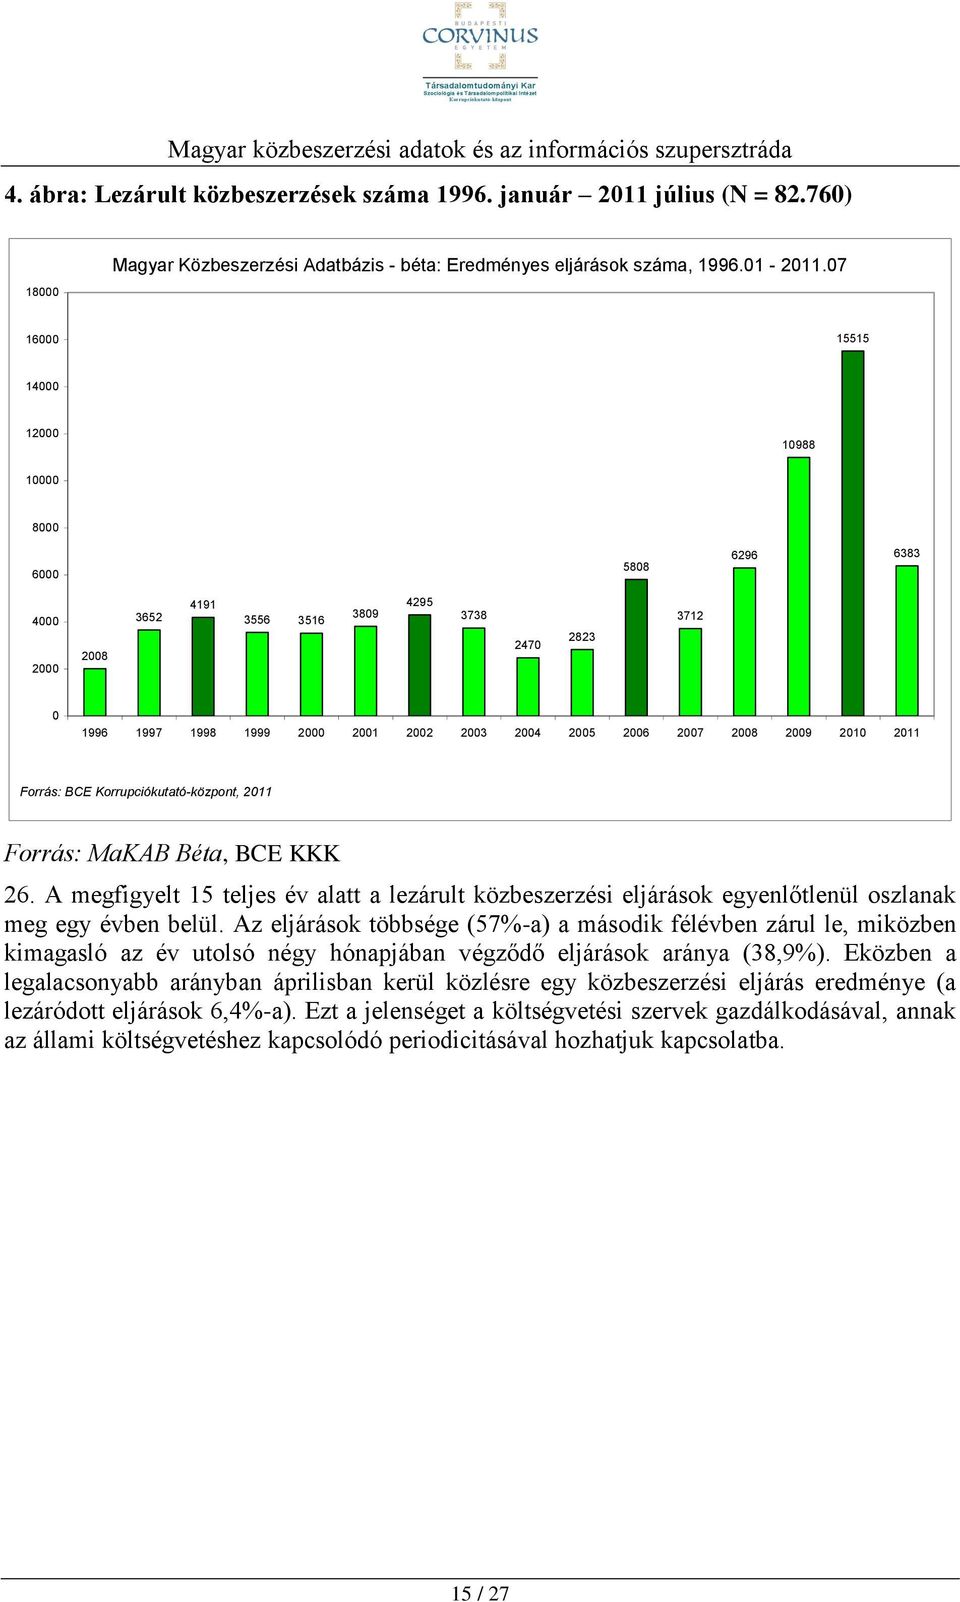 2009 2010 2011 Forrás: BCE Korrupciókutató-központ, 2011 Forrás: MaKAB Béta, BCE KKK 26. A megfigyelt 15 teljes év alatt a lezárult közbeszerzési eljárások egyenlőtlenül oszlanak meg egy évben belül.